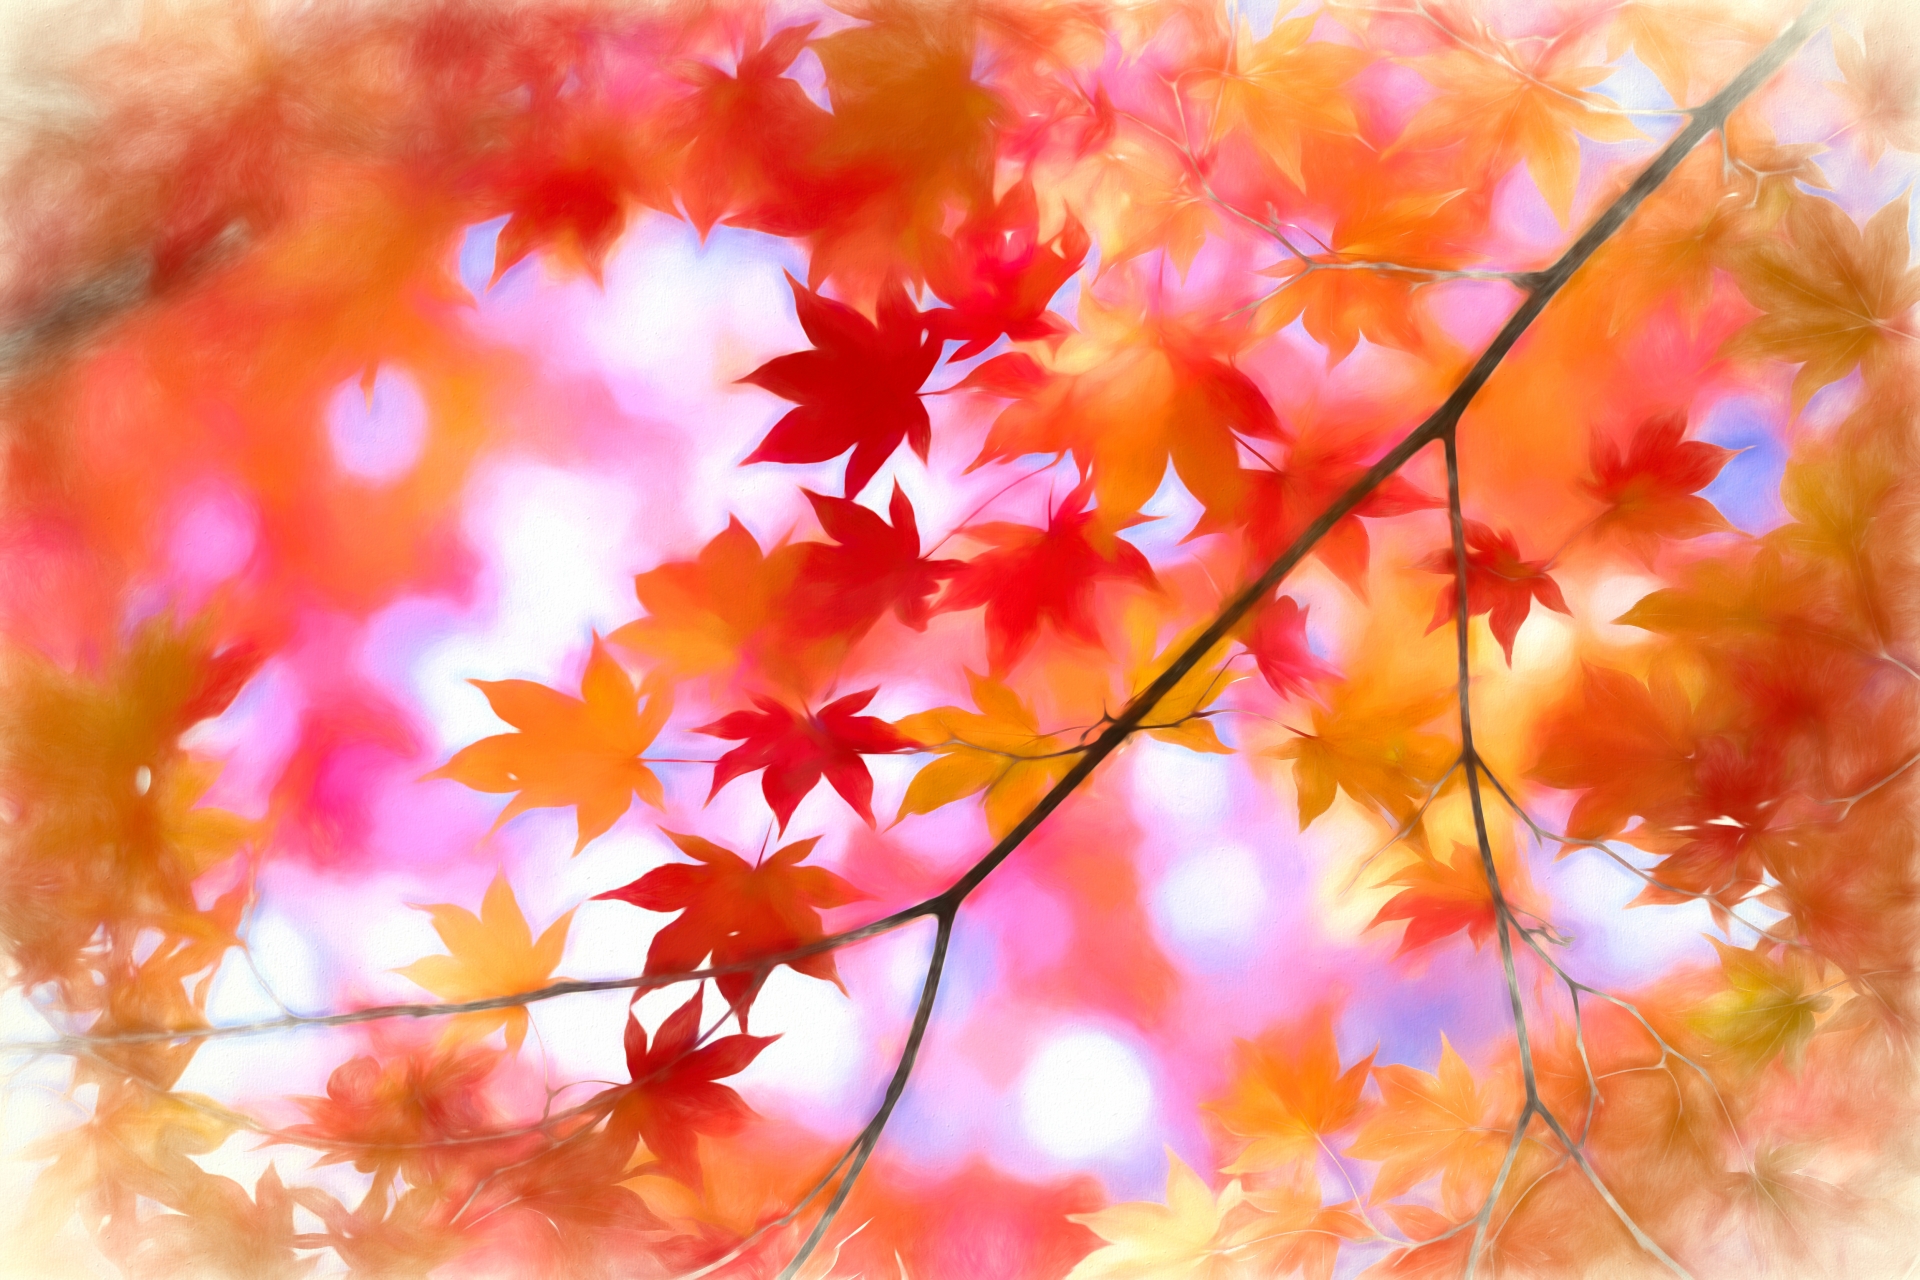 平塚市 子連れで秋のおでかけ 紅葉の見頃や名所 穴場9選をご紹介 神奈川イベントプラス 親子で楽しいお得な週末お出かけ情報